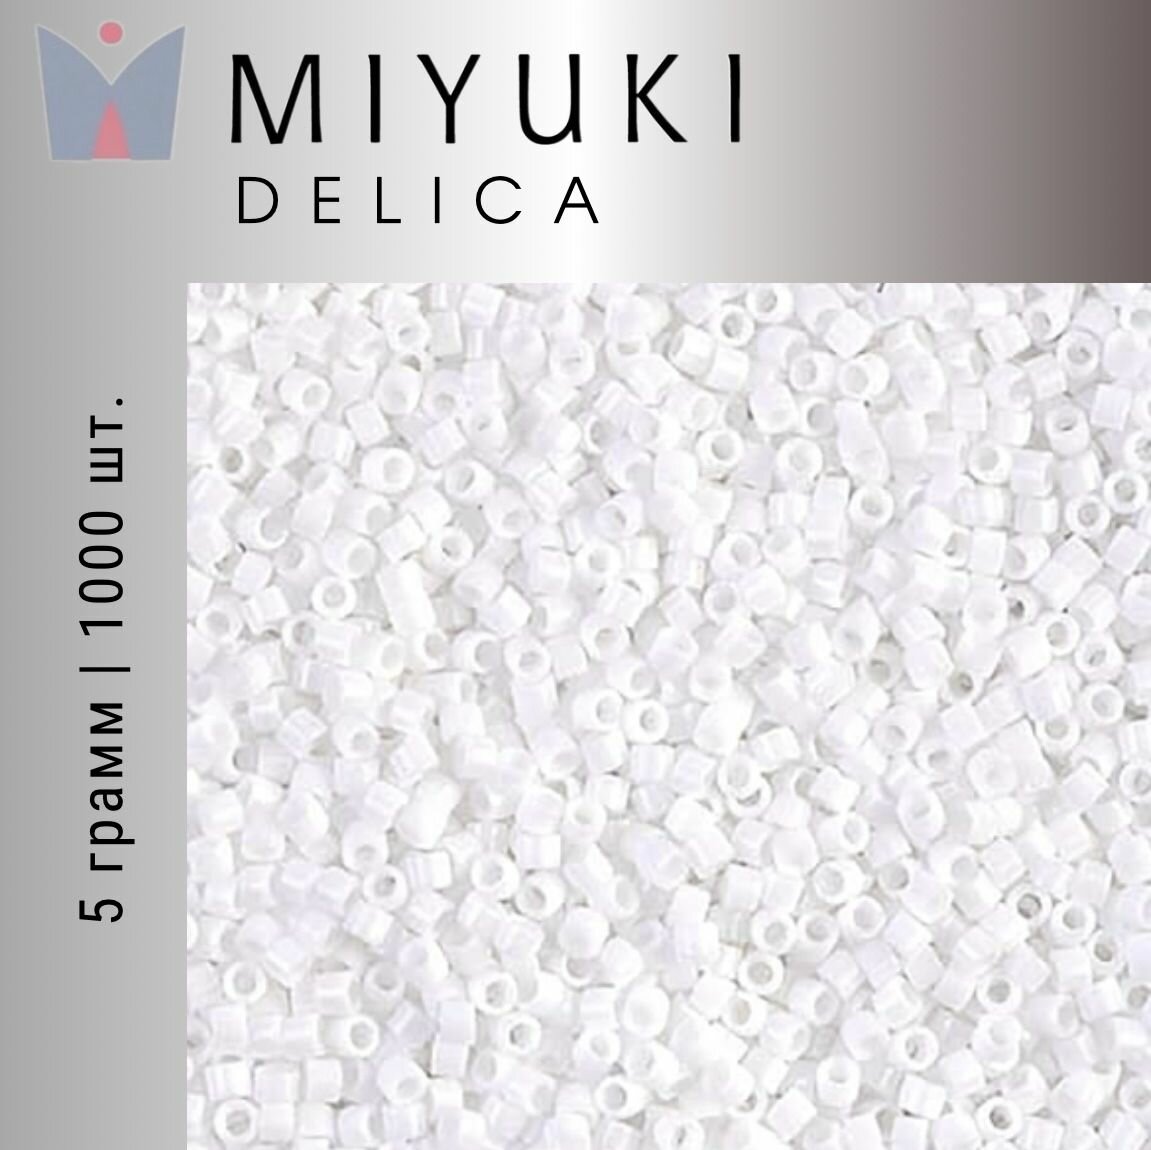 Бисер японский Miyuki Delica цилиндрический, 5гр, 11/0 DB-0200, Миюки Делика белый непрозрачный глянцевый